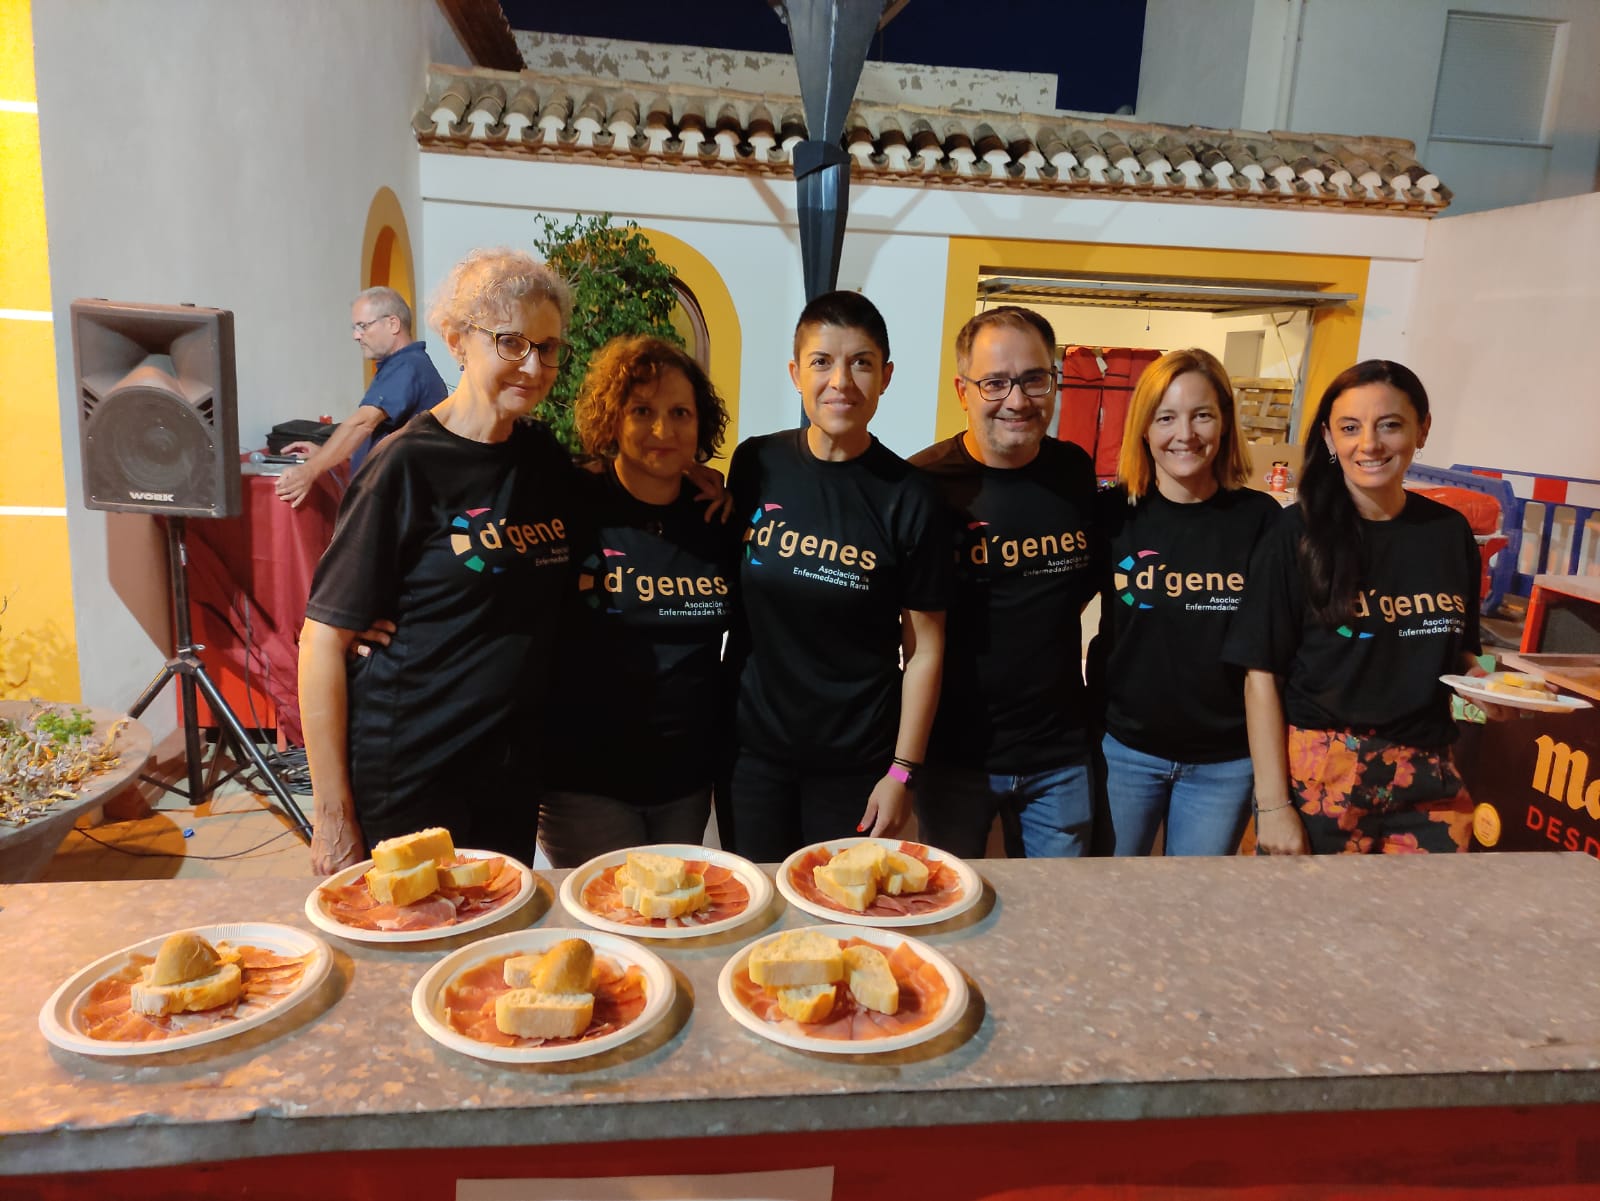 ALHAMA DE MURCIA | Éxito del I Corte de jamón Solidario a beneficio de D´Genes celebrado en el barrio de Los Dolores de Alhama de Murcia￼